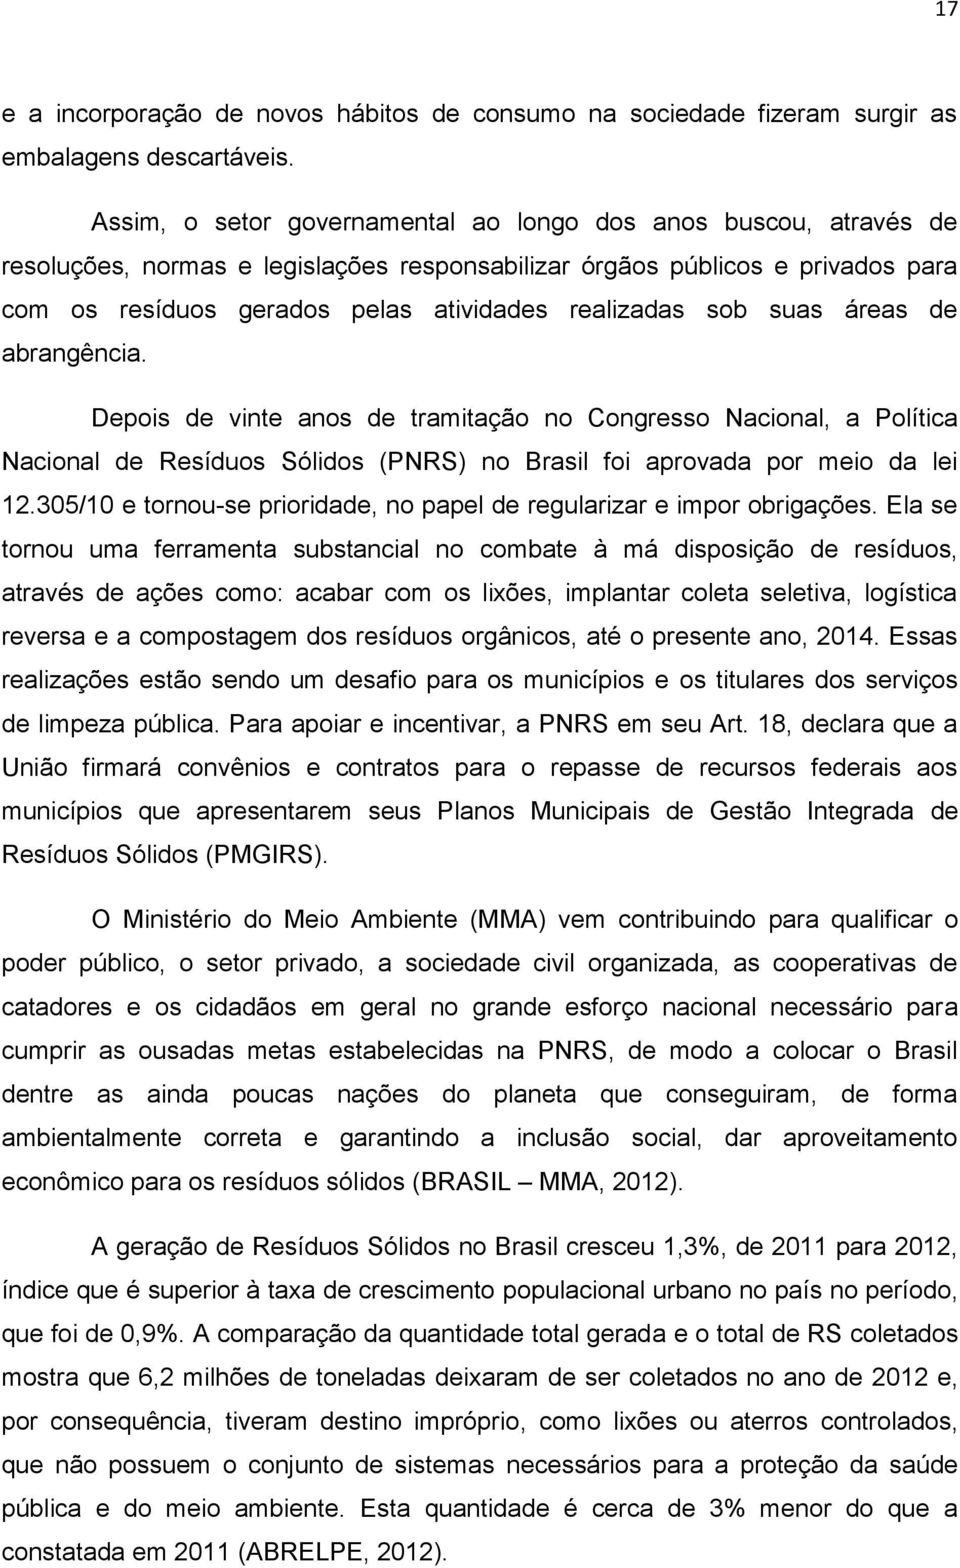 sob suas áreas de abrangência. Depois de vinte anos de tramitação no Congresso Nacional, a Política Nacional de Resíduos Sólidos (PNRS) no Brasil foi aprovada por meio da lei 12.